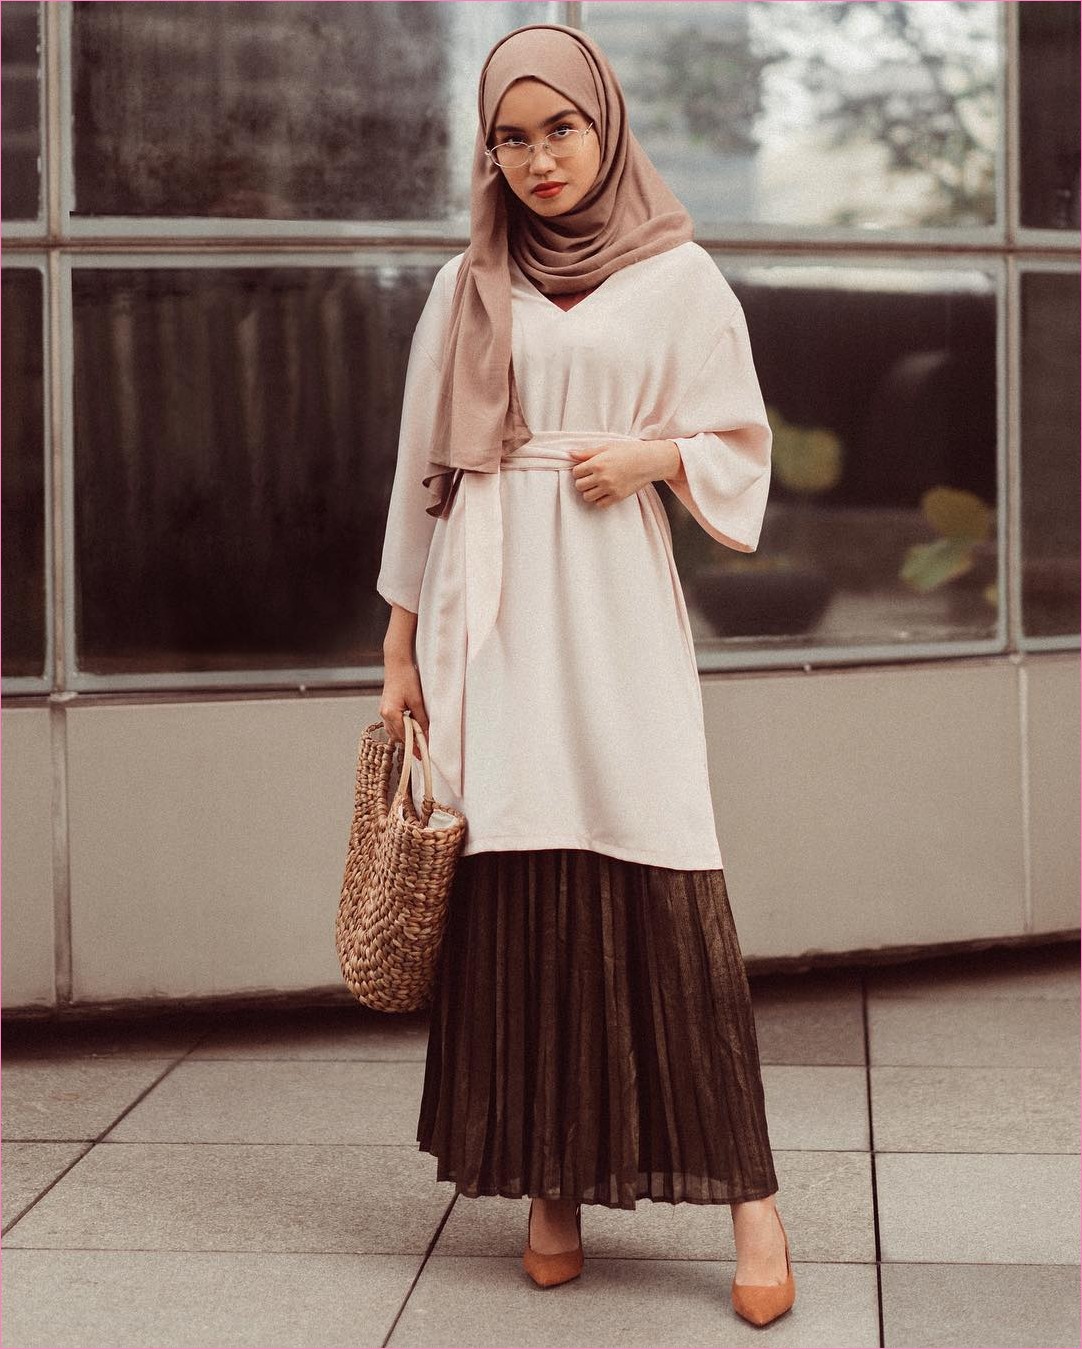 35+ Trend Outfit Rok Untuk Hijabers Ala Selebgram 2019 - Model Baju Muslim Terbaru 2019